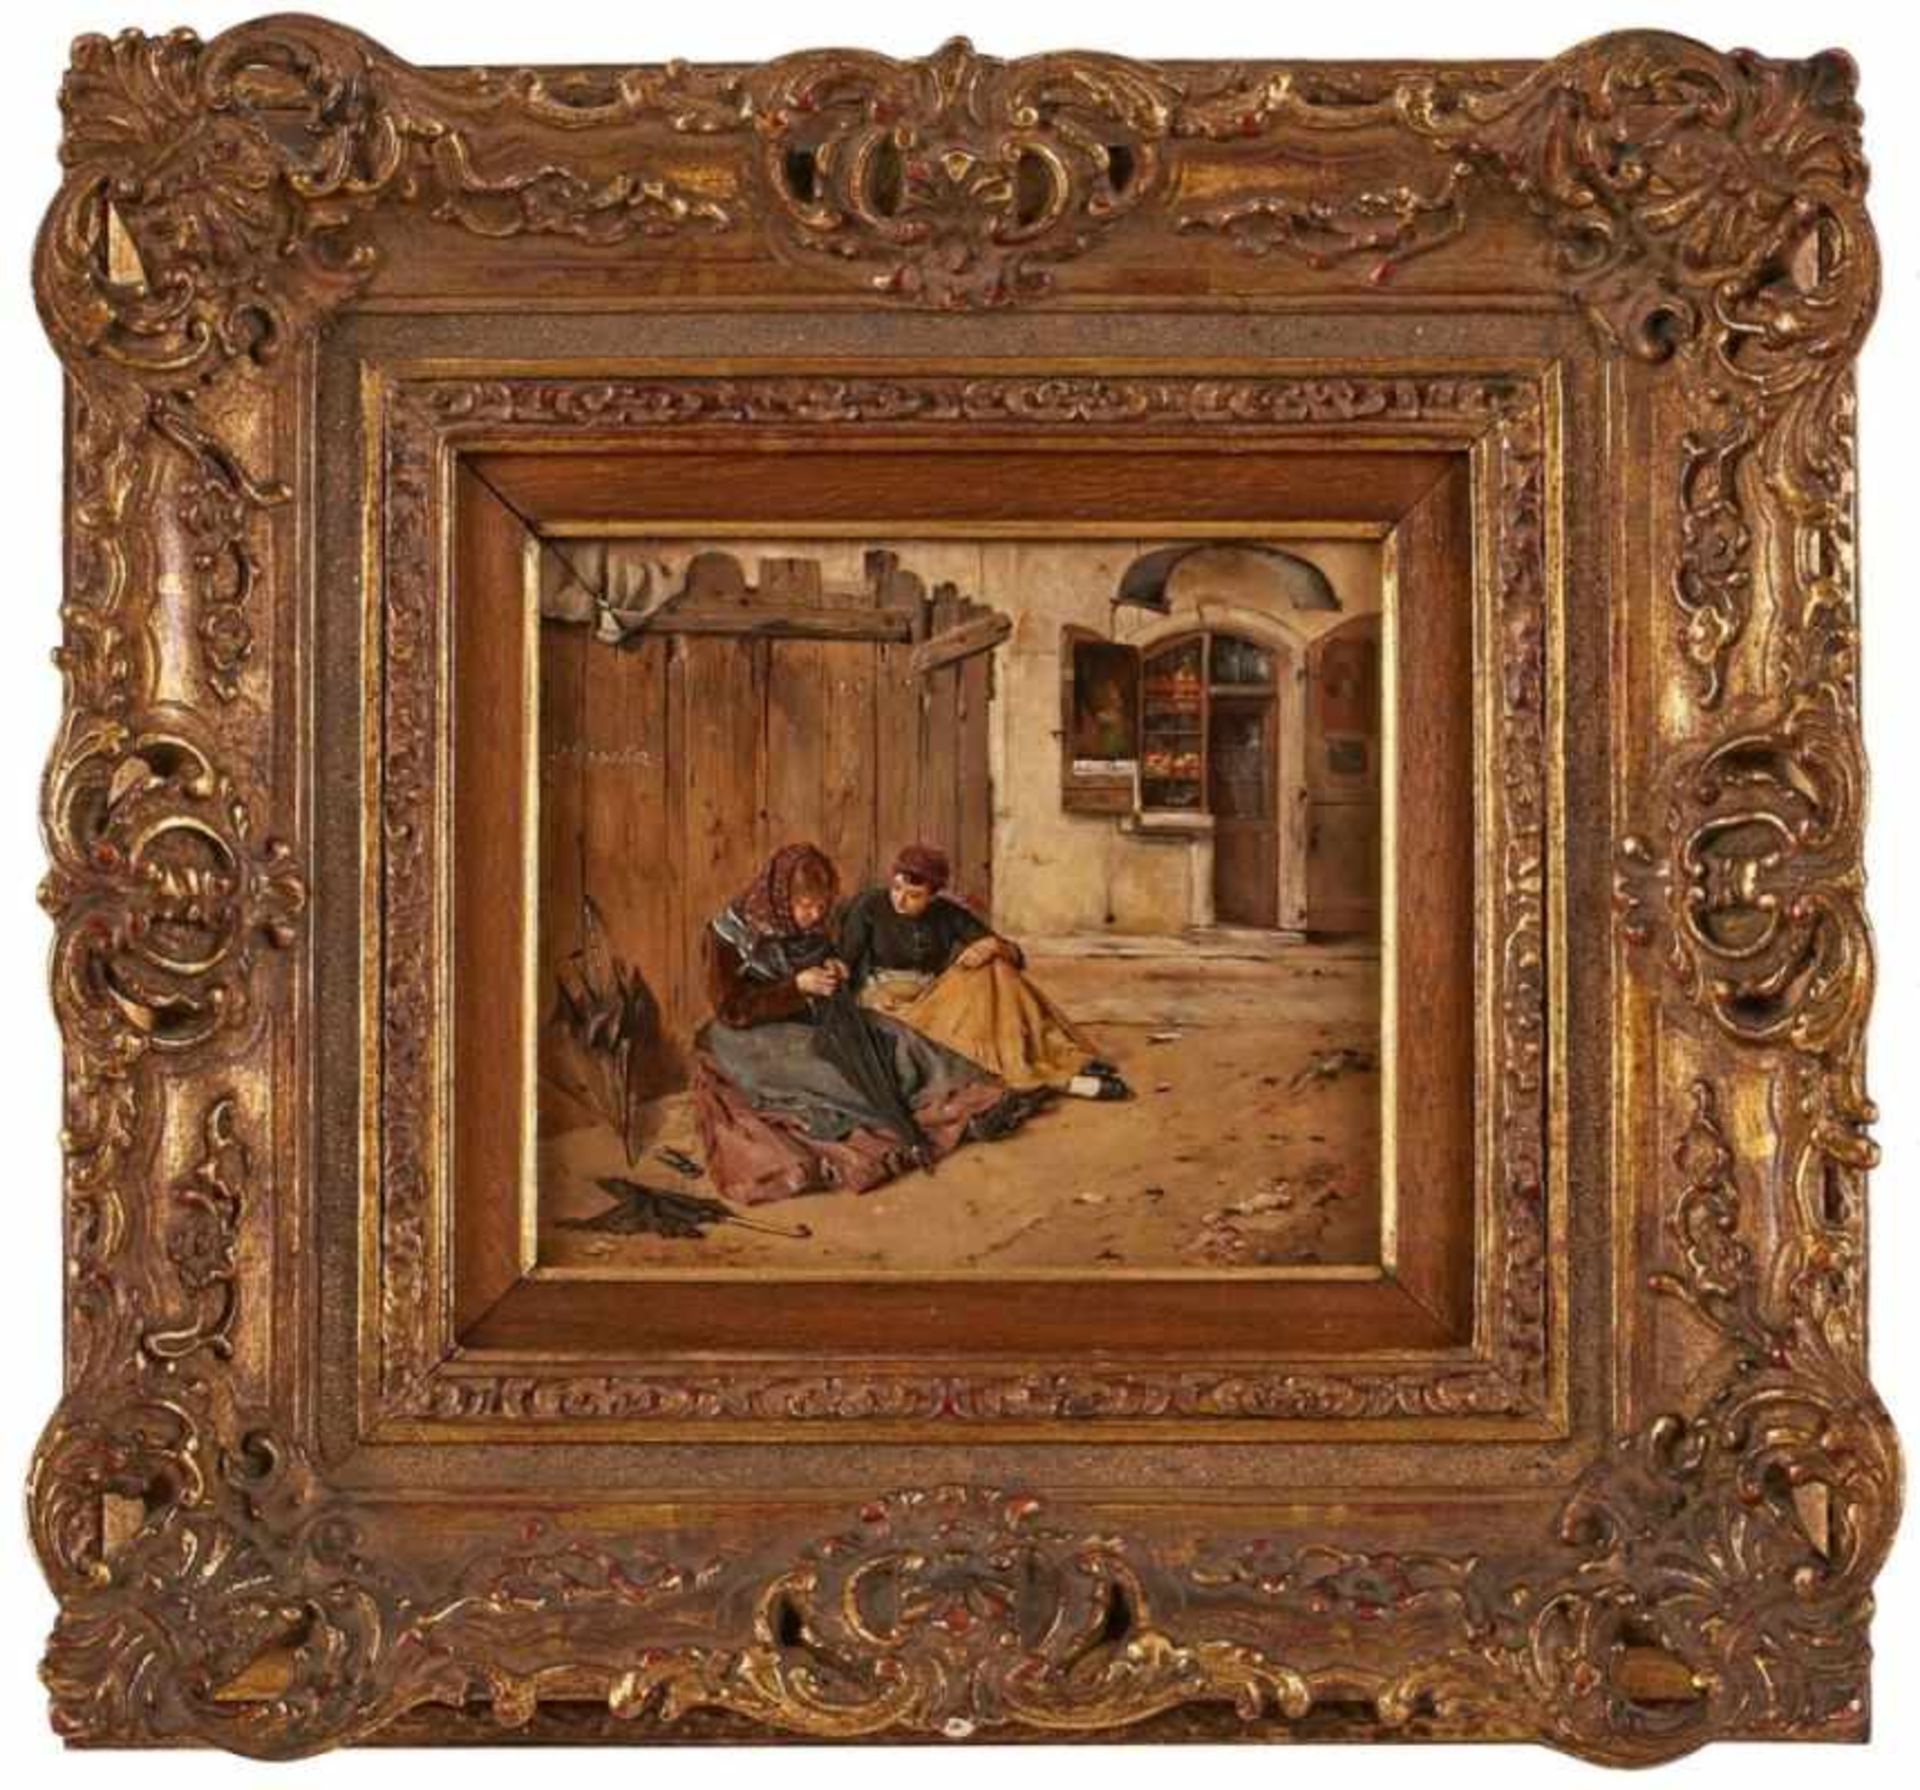 Gemälde Julius Schmidt 1854 Wien - 1935 Mödling Schüler Eisenmengers. 1878/80 in Rom. War Lehrer